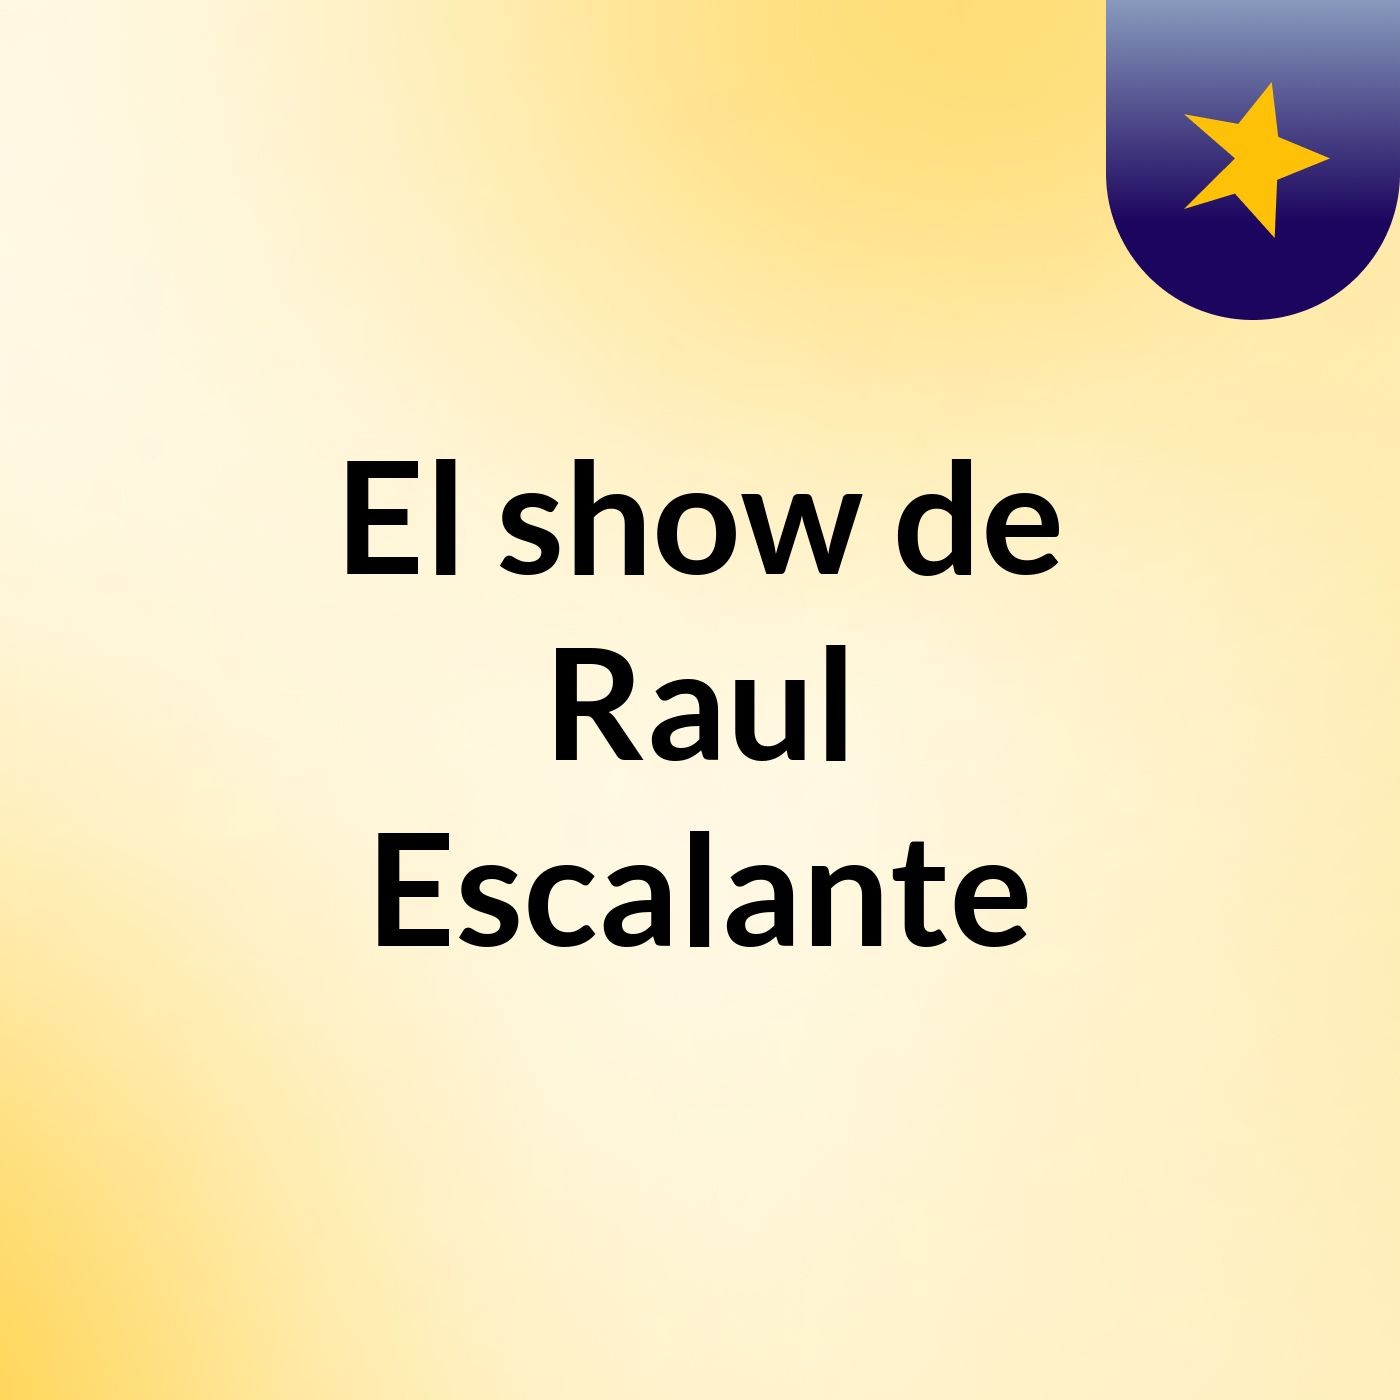 El show de Raul Escalante